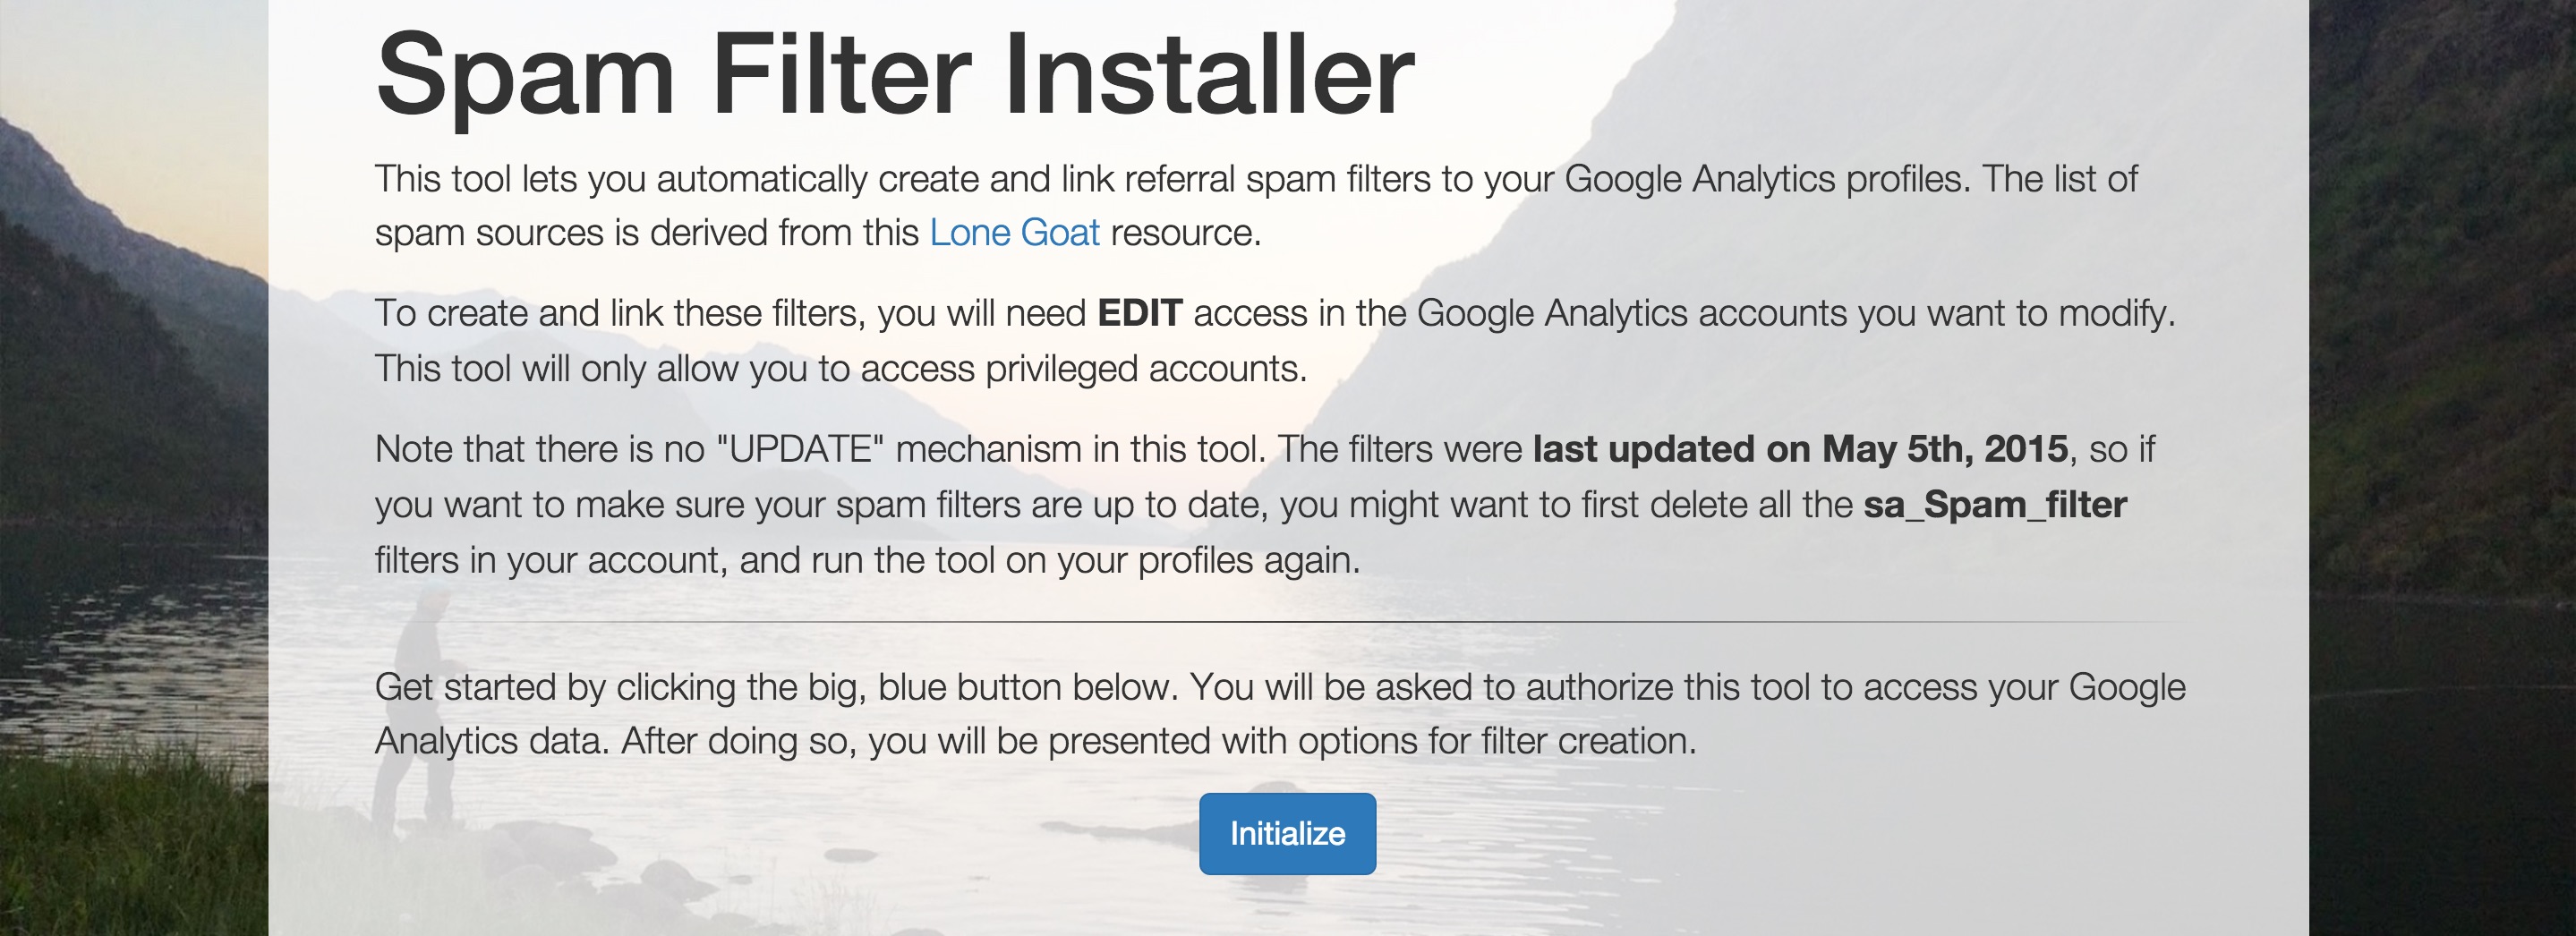 Spam Filter Installer Tool